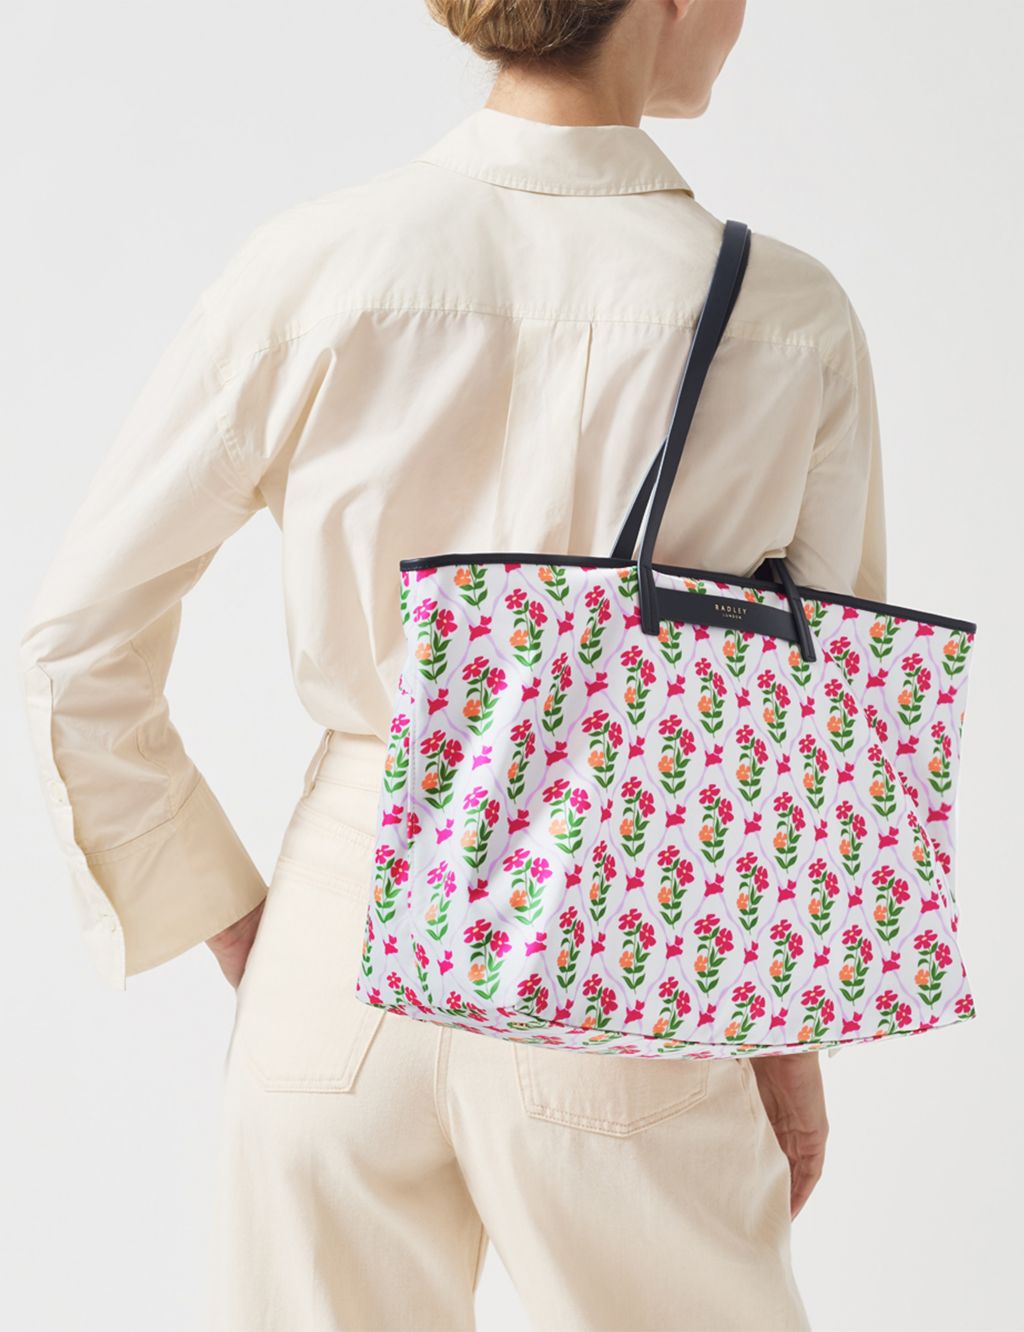 Finsbury Park Floral Shoulder Bag 3 of 5